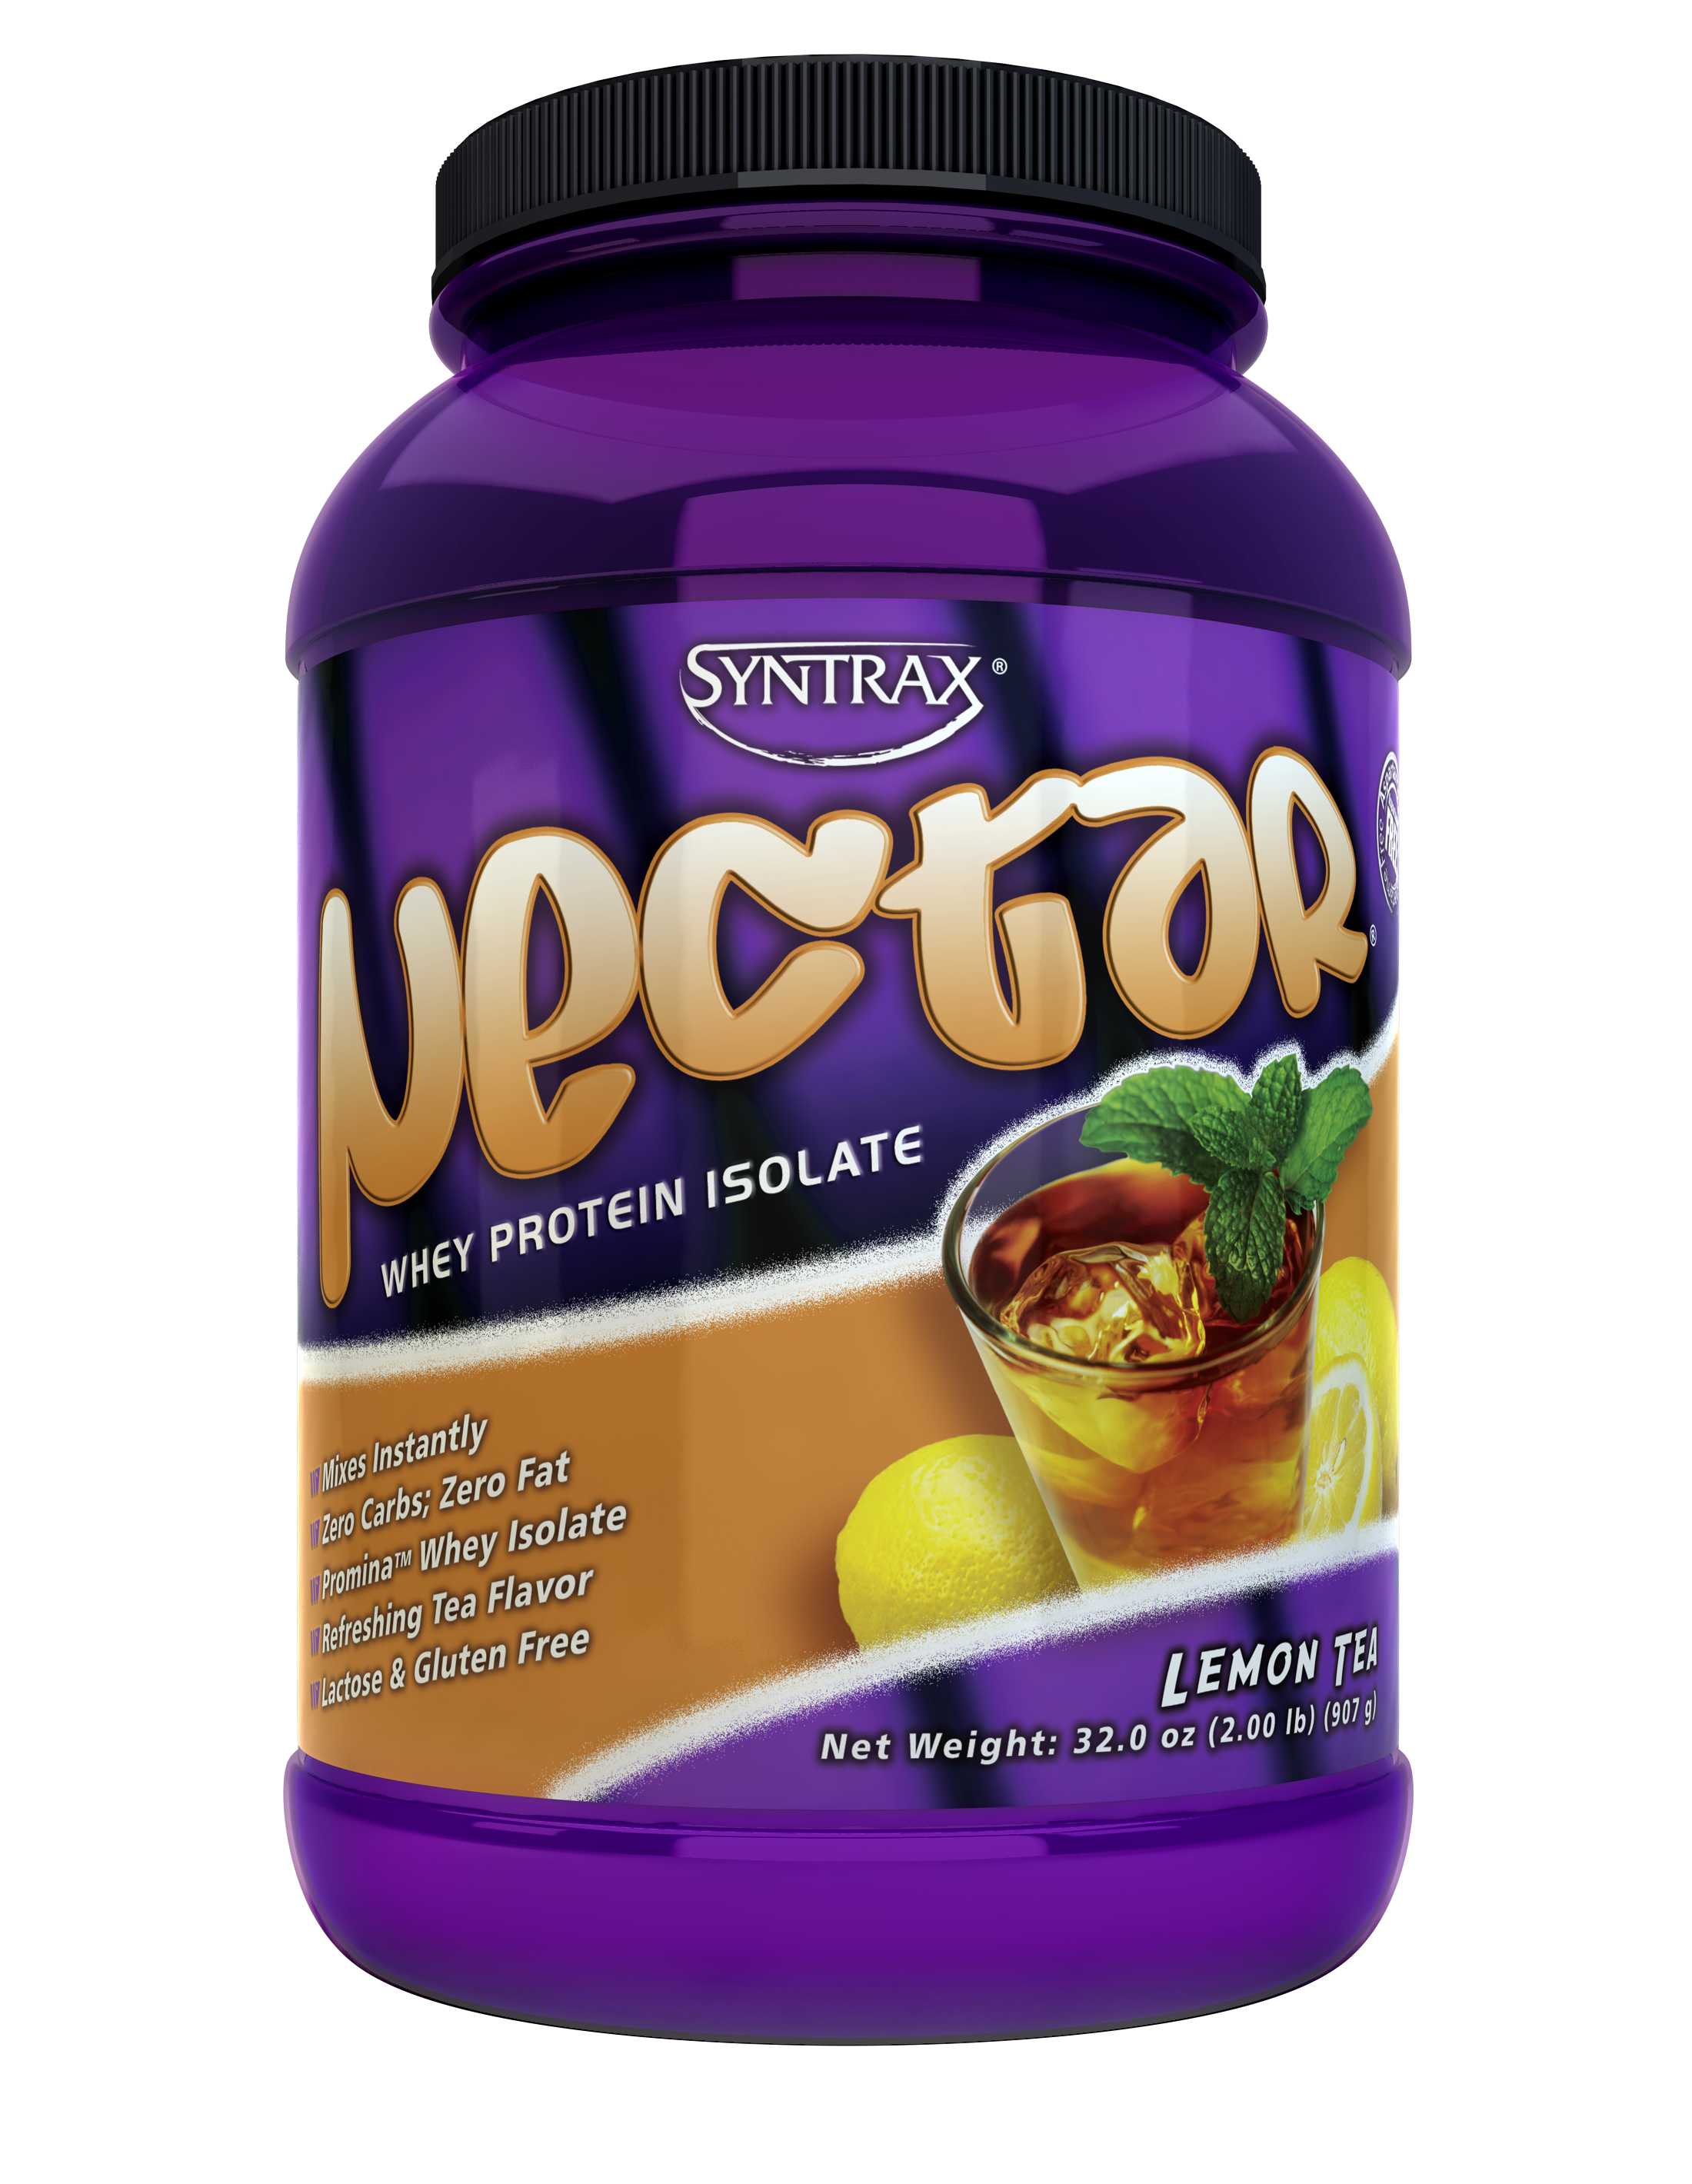 Syntrax Nectar - Lemon Tea 2 lb